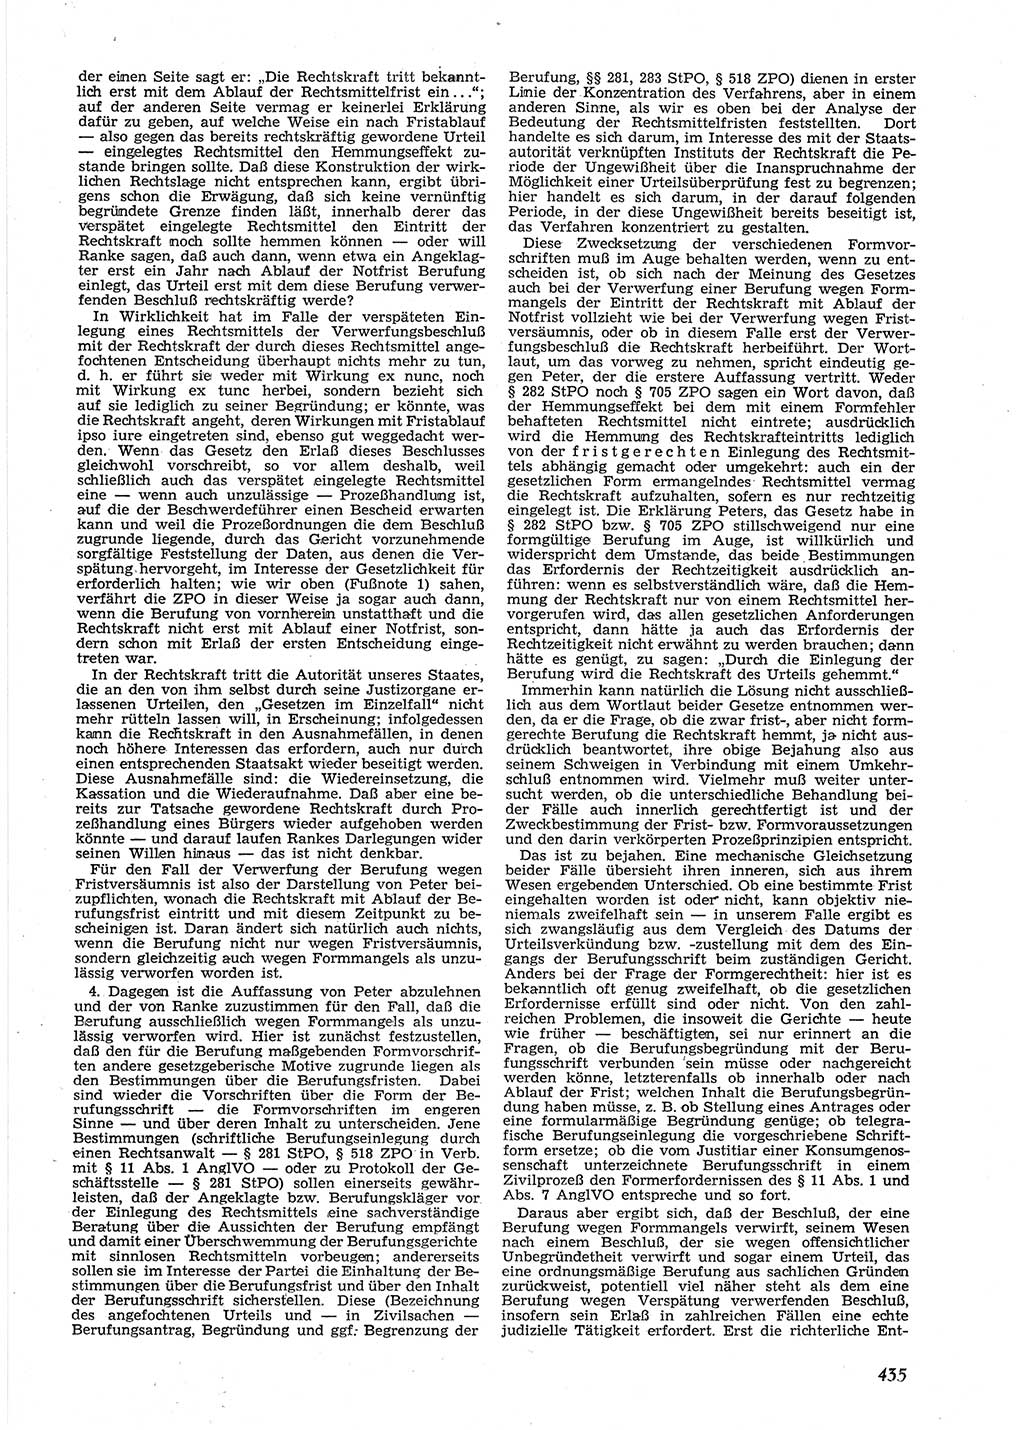 Neue Justiz (NJ), Zeitschrift für Recht und Rechtswissenschaft [Deutsche Demokratische Republik (DDR)], 9. Jahrgang 1955, Seite 435 (NJ DDR 1955, S. 435)